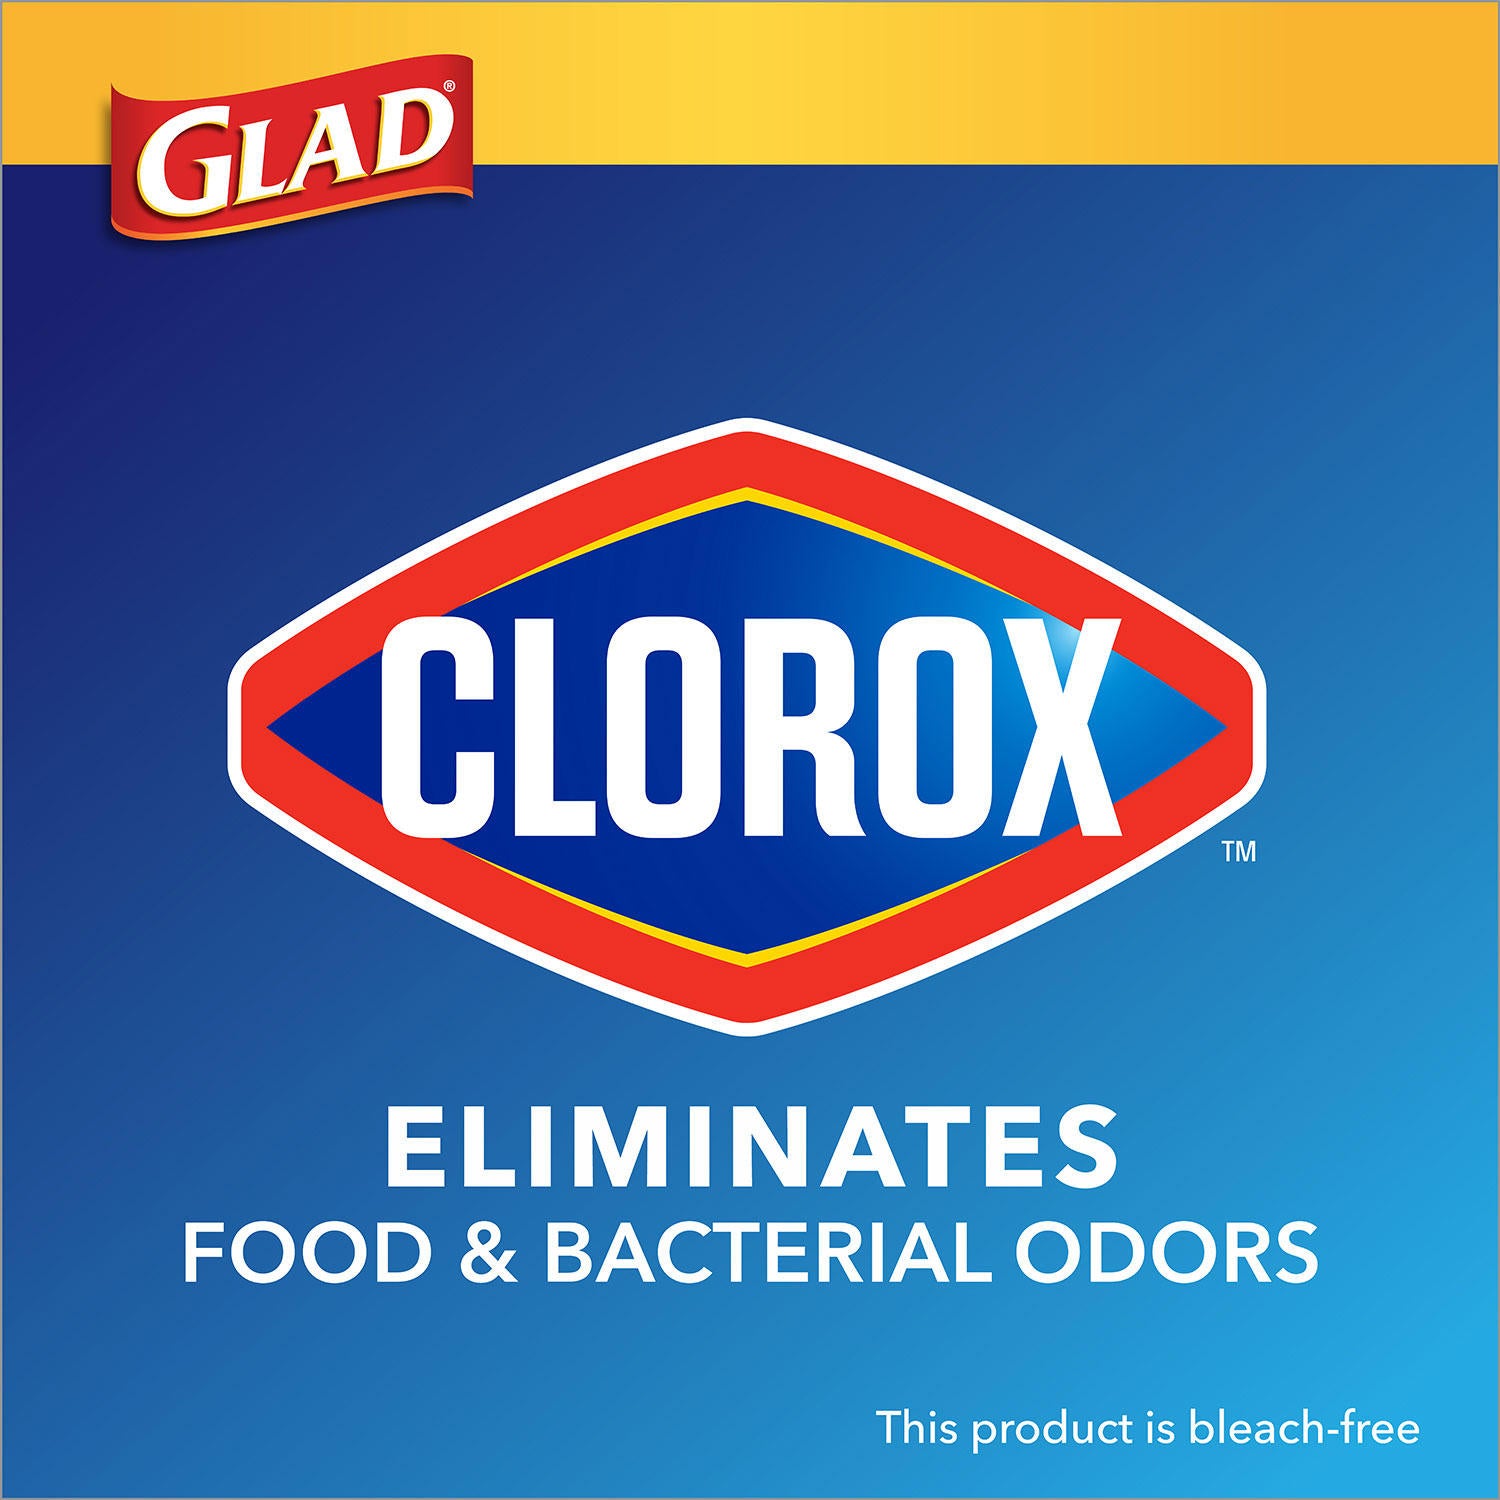 Glad ForceFlex Plus w/ Clorox Tall Kitchen Trash Bags, 120 ct.